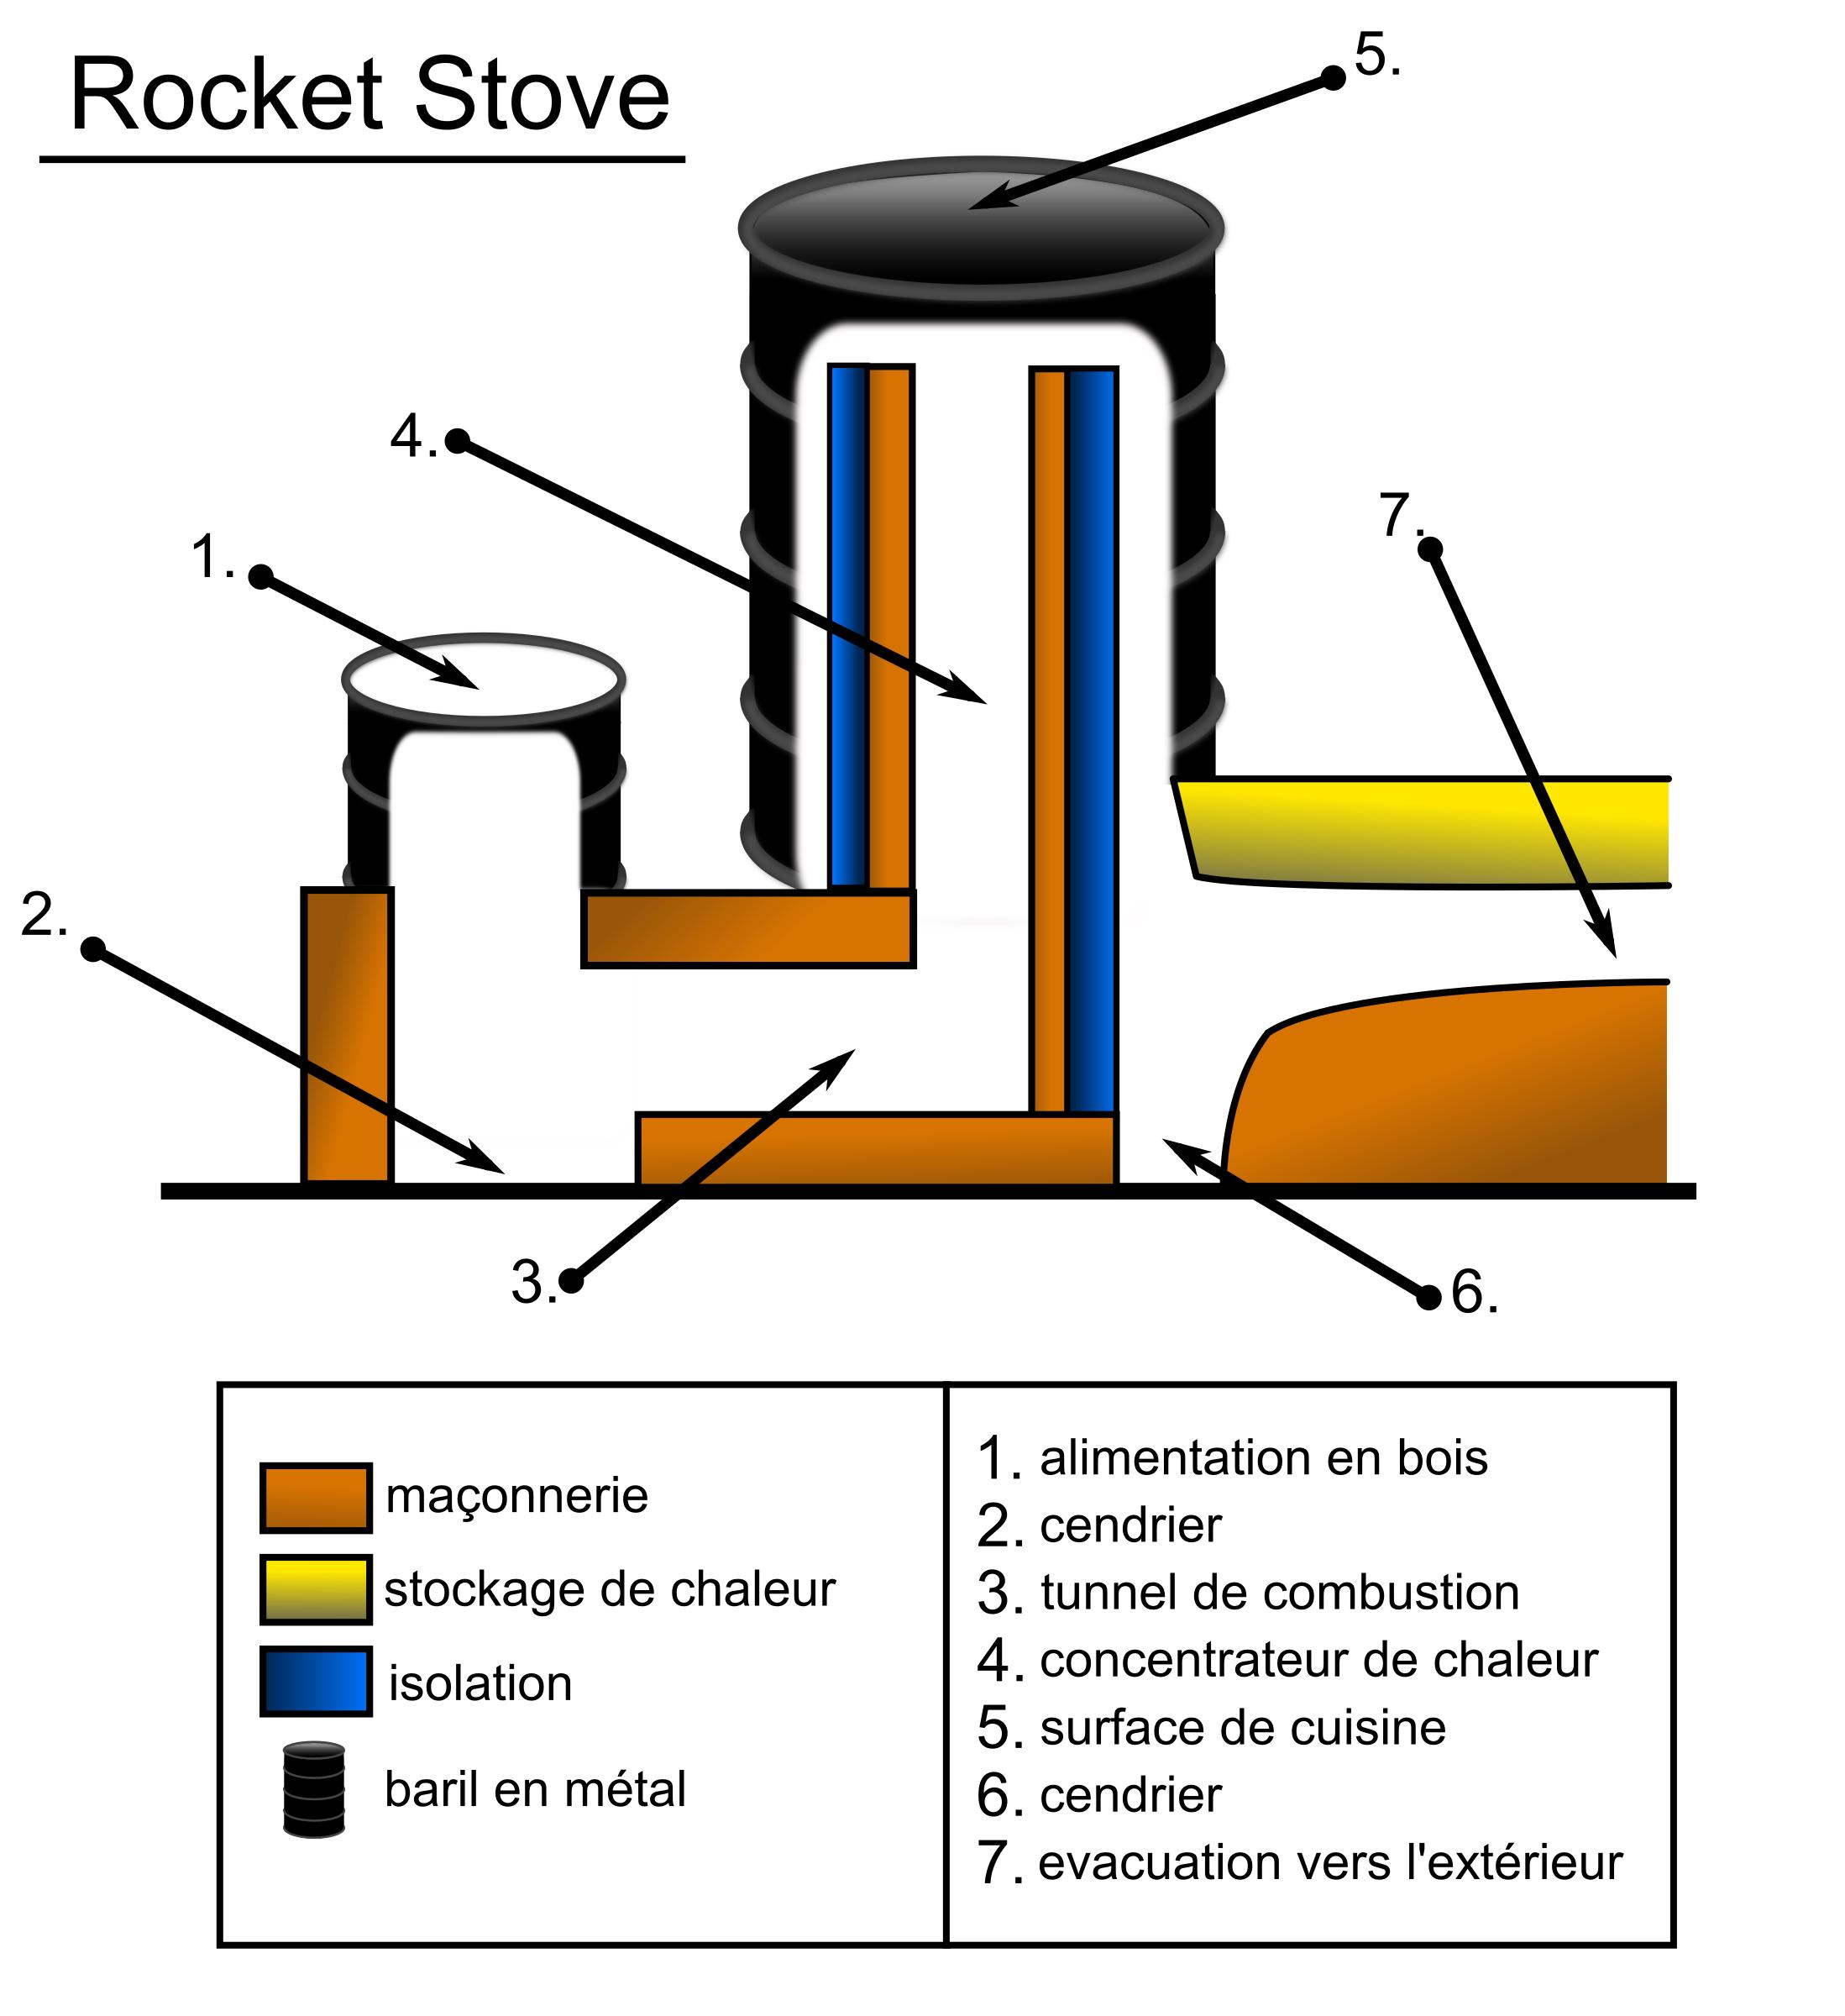 Rocket Stove schema png